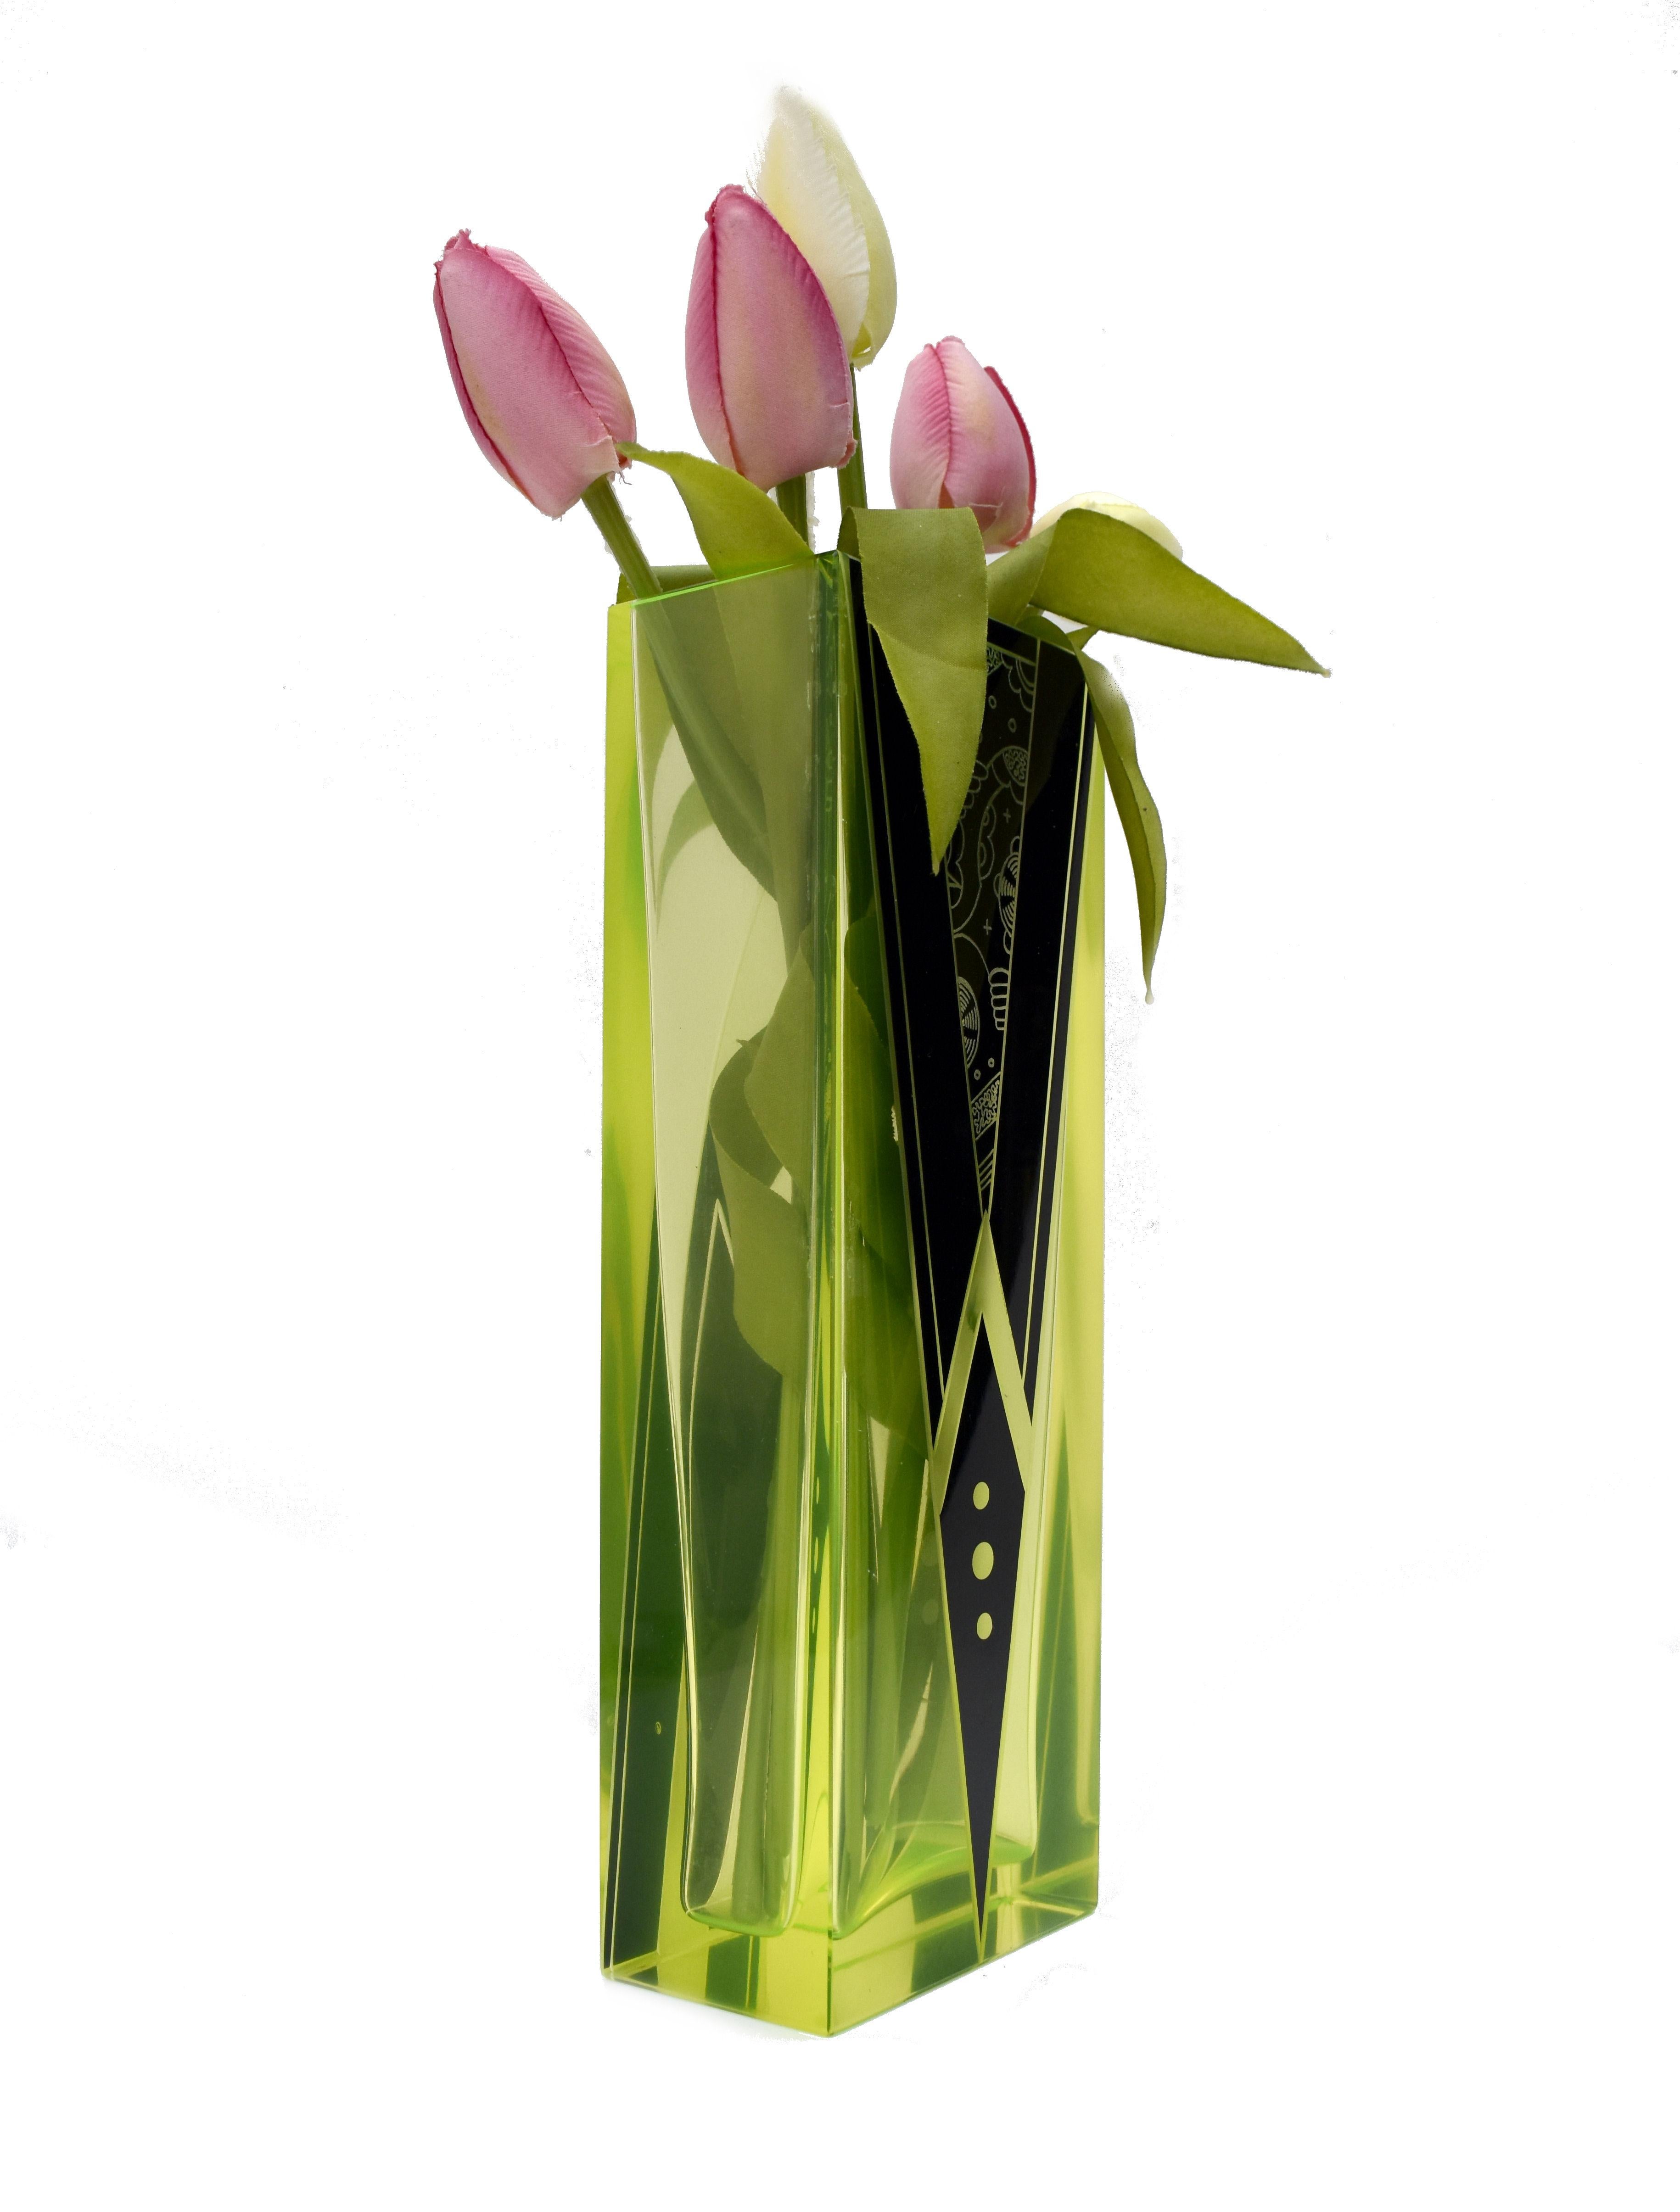 Originaire de la République tchèque, ce vase Art déco n'est pas seulement magnifique avec sa couleur verte/jaune très distinctive et ses accents d'émail noir de jais, mais il est aussi de grande taille, puisqu'il mesure un peu plus de 23 cm. Le